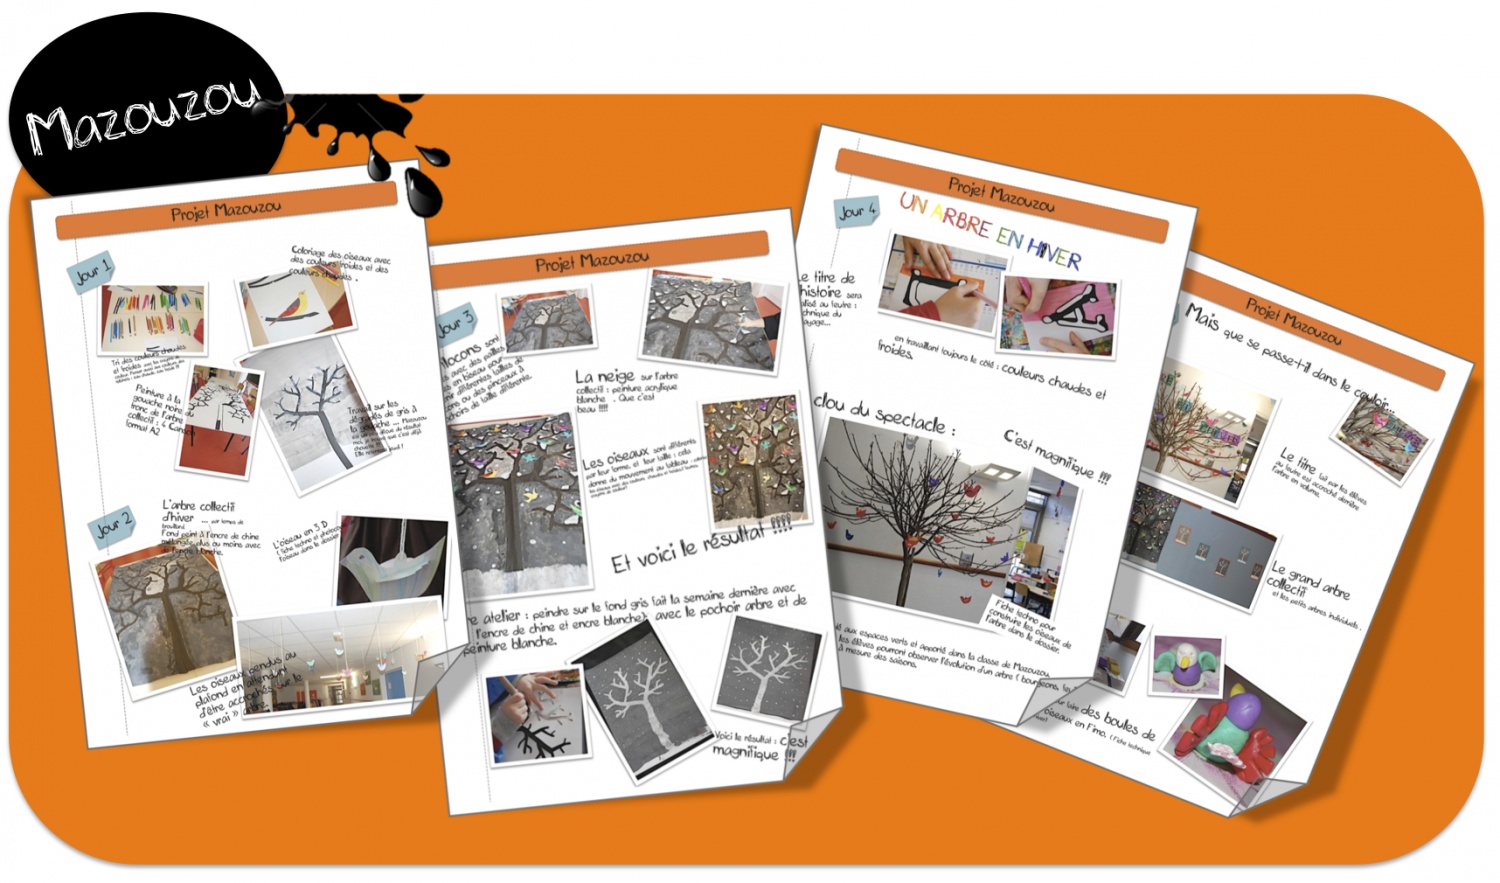 Les mandalas arbre de vie: Livre de coloriage arbres – Mandalas d'arbre de  vie – Dessin à colorier d'arbre – Journal de dessin (French Edition)